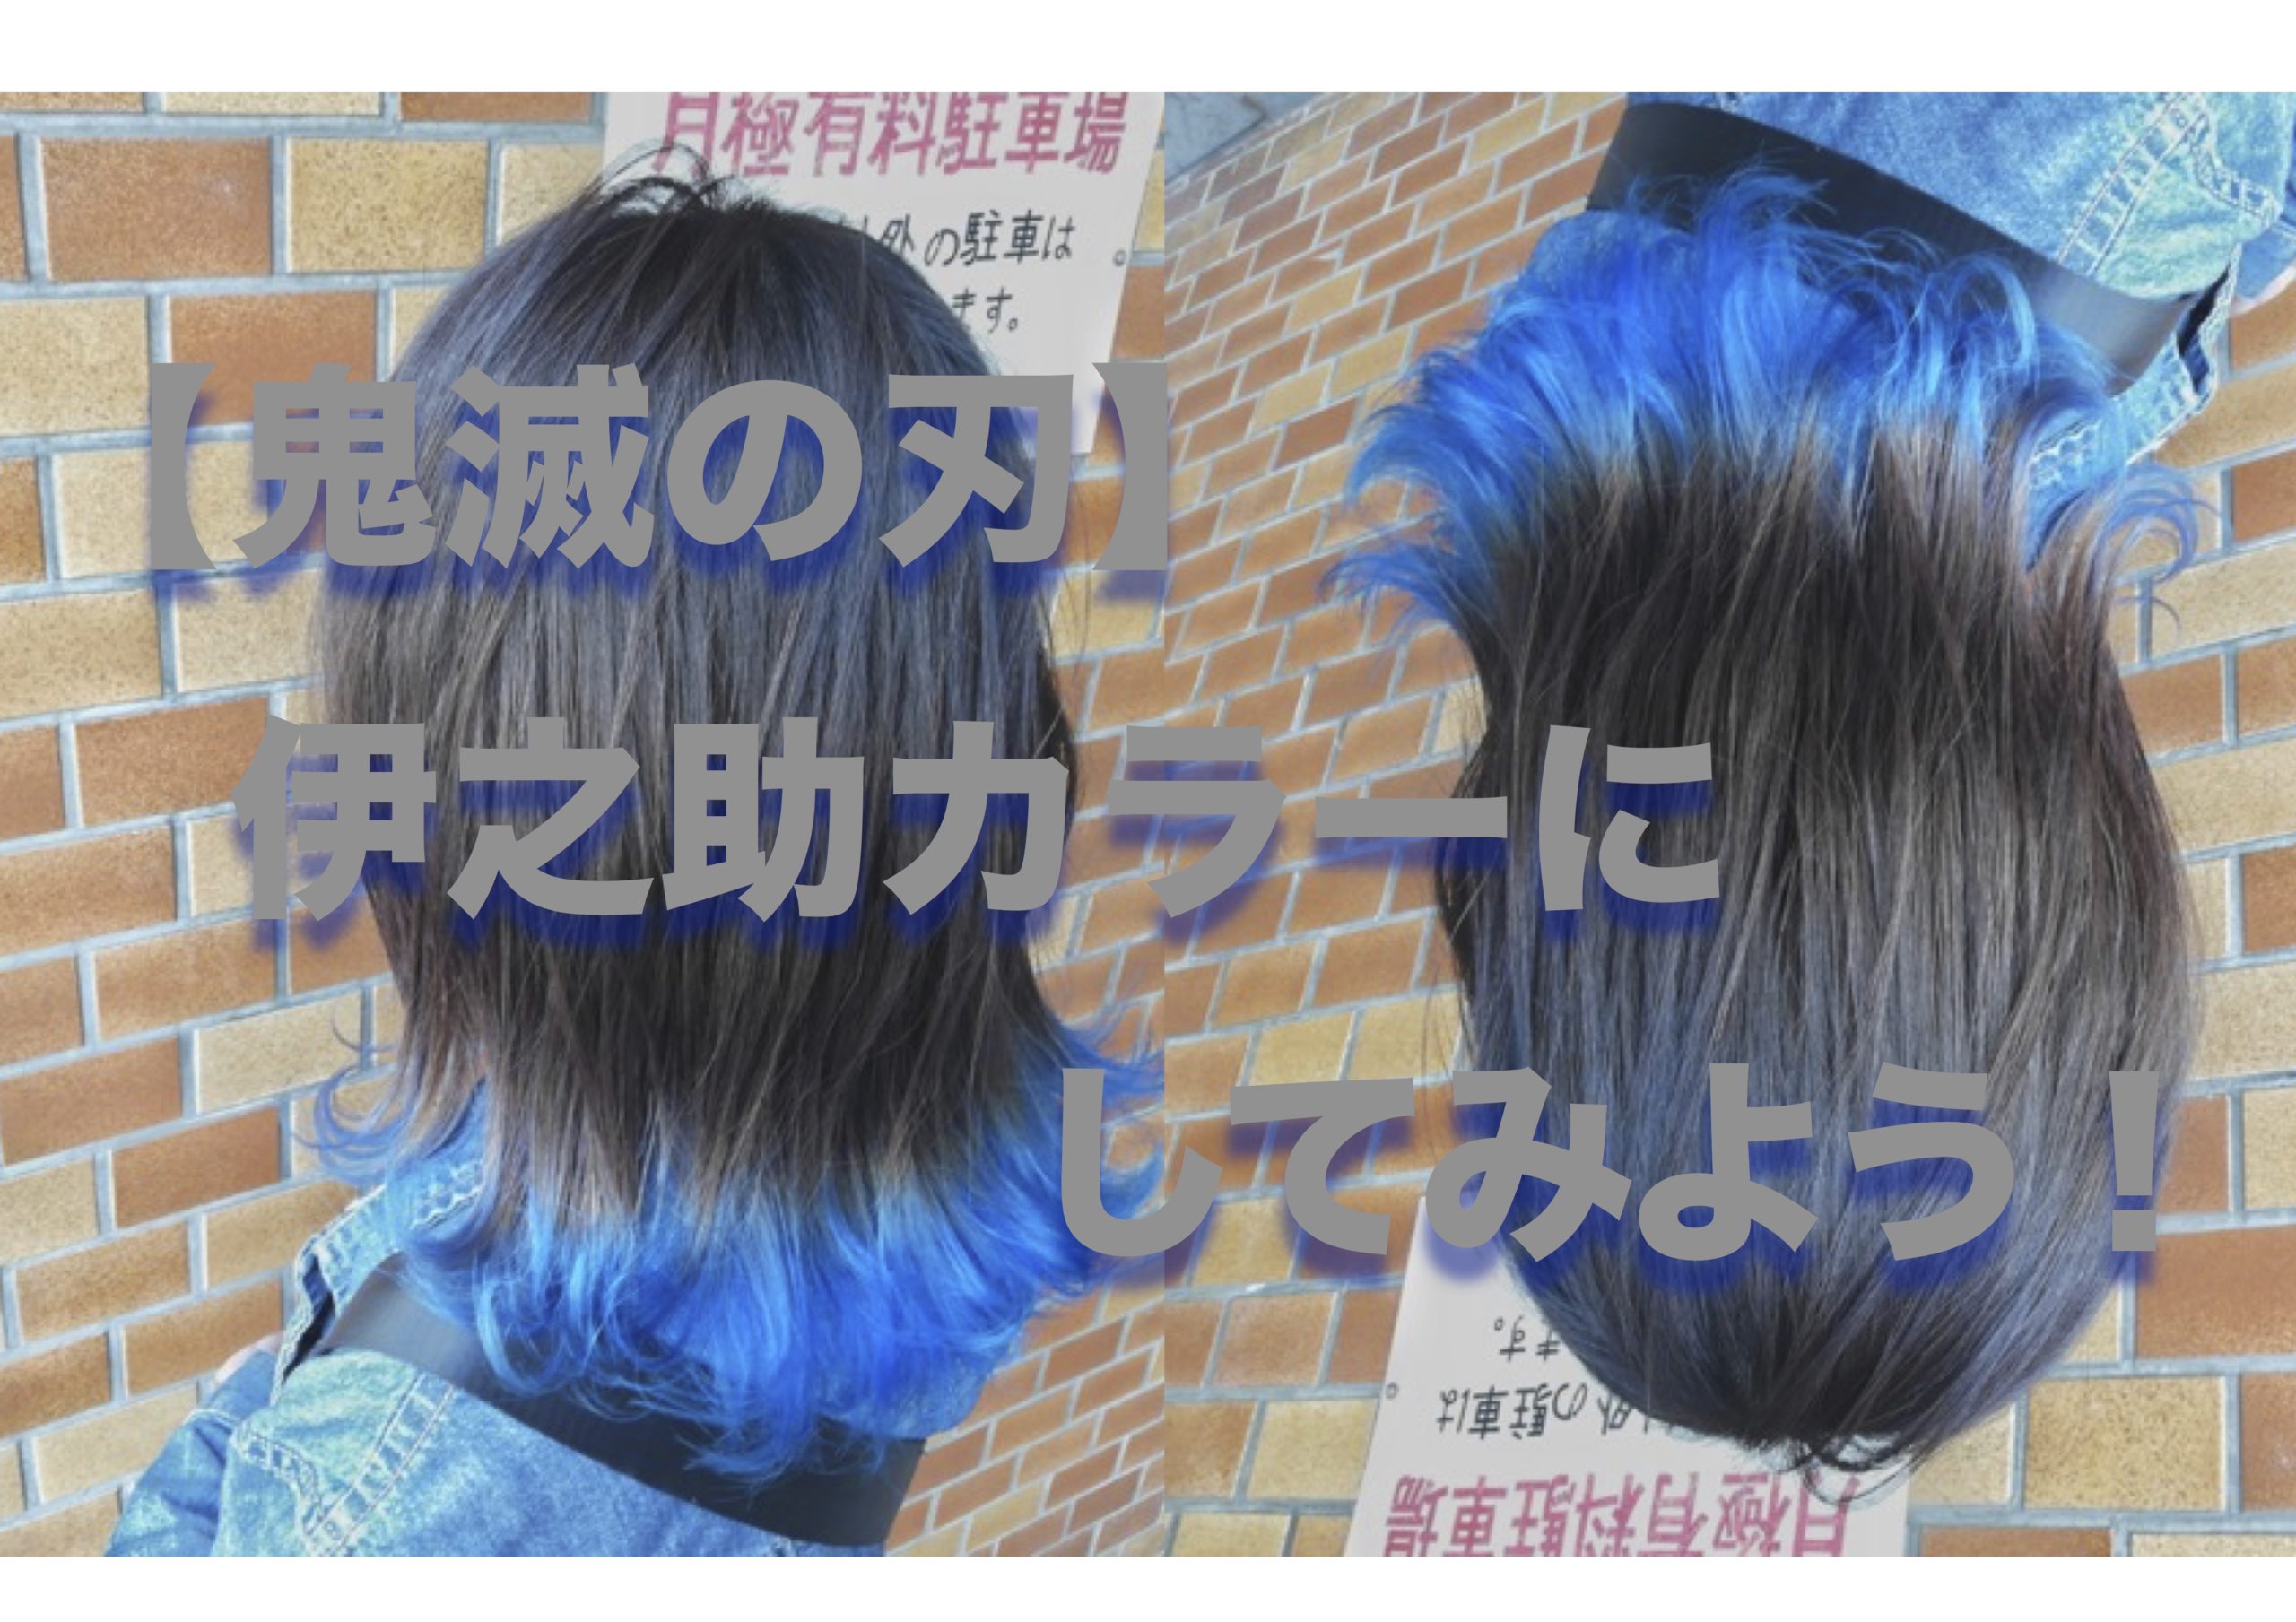 鬼滅の刃 伊之助カラーで髪を青のグラデーションカラーにしよう フリーのヘアスタイリトだから言える損しない情報